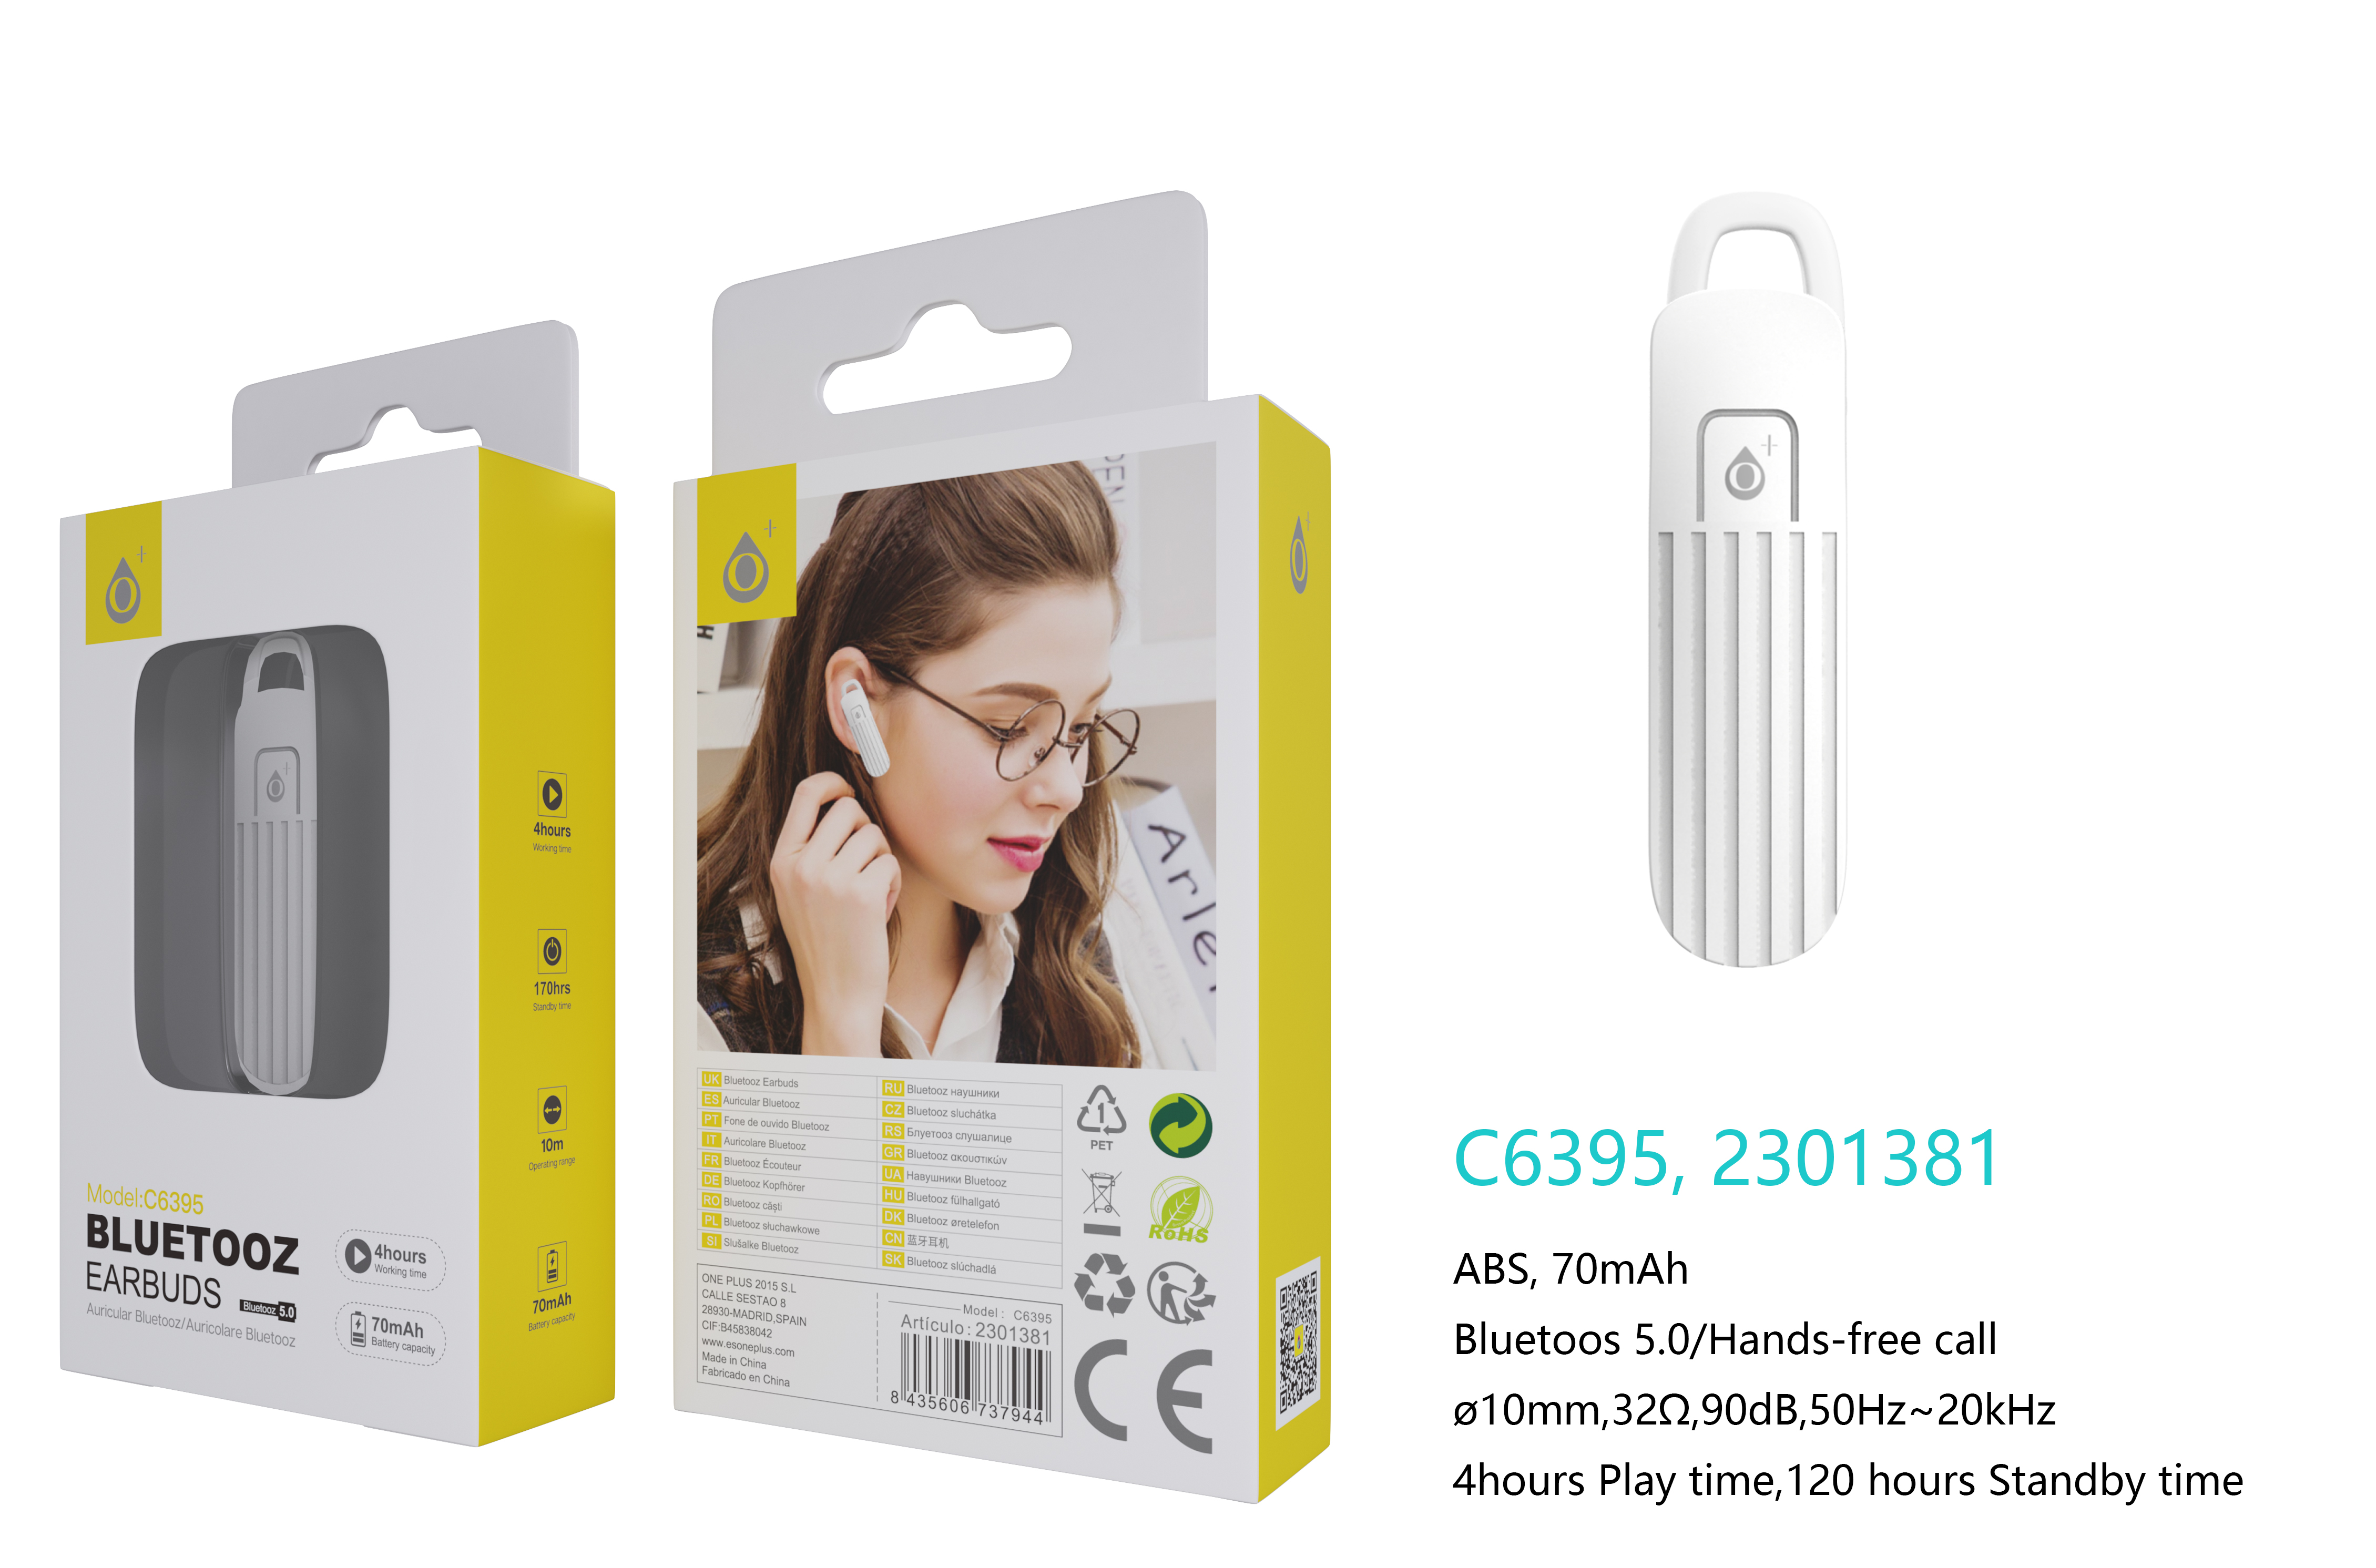 C6395 BL Auricular Bluetooth Ranur para 2 dispositivos BTS con función Rellamada, BTS 5.0 70mAh, uso para 4 horas, Blanco